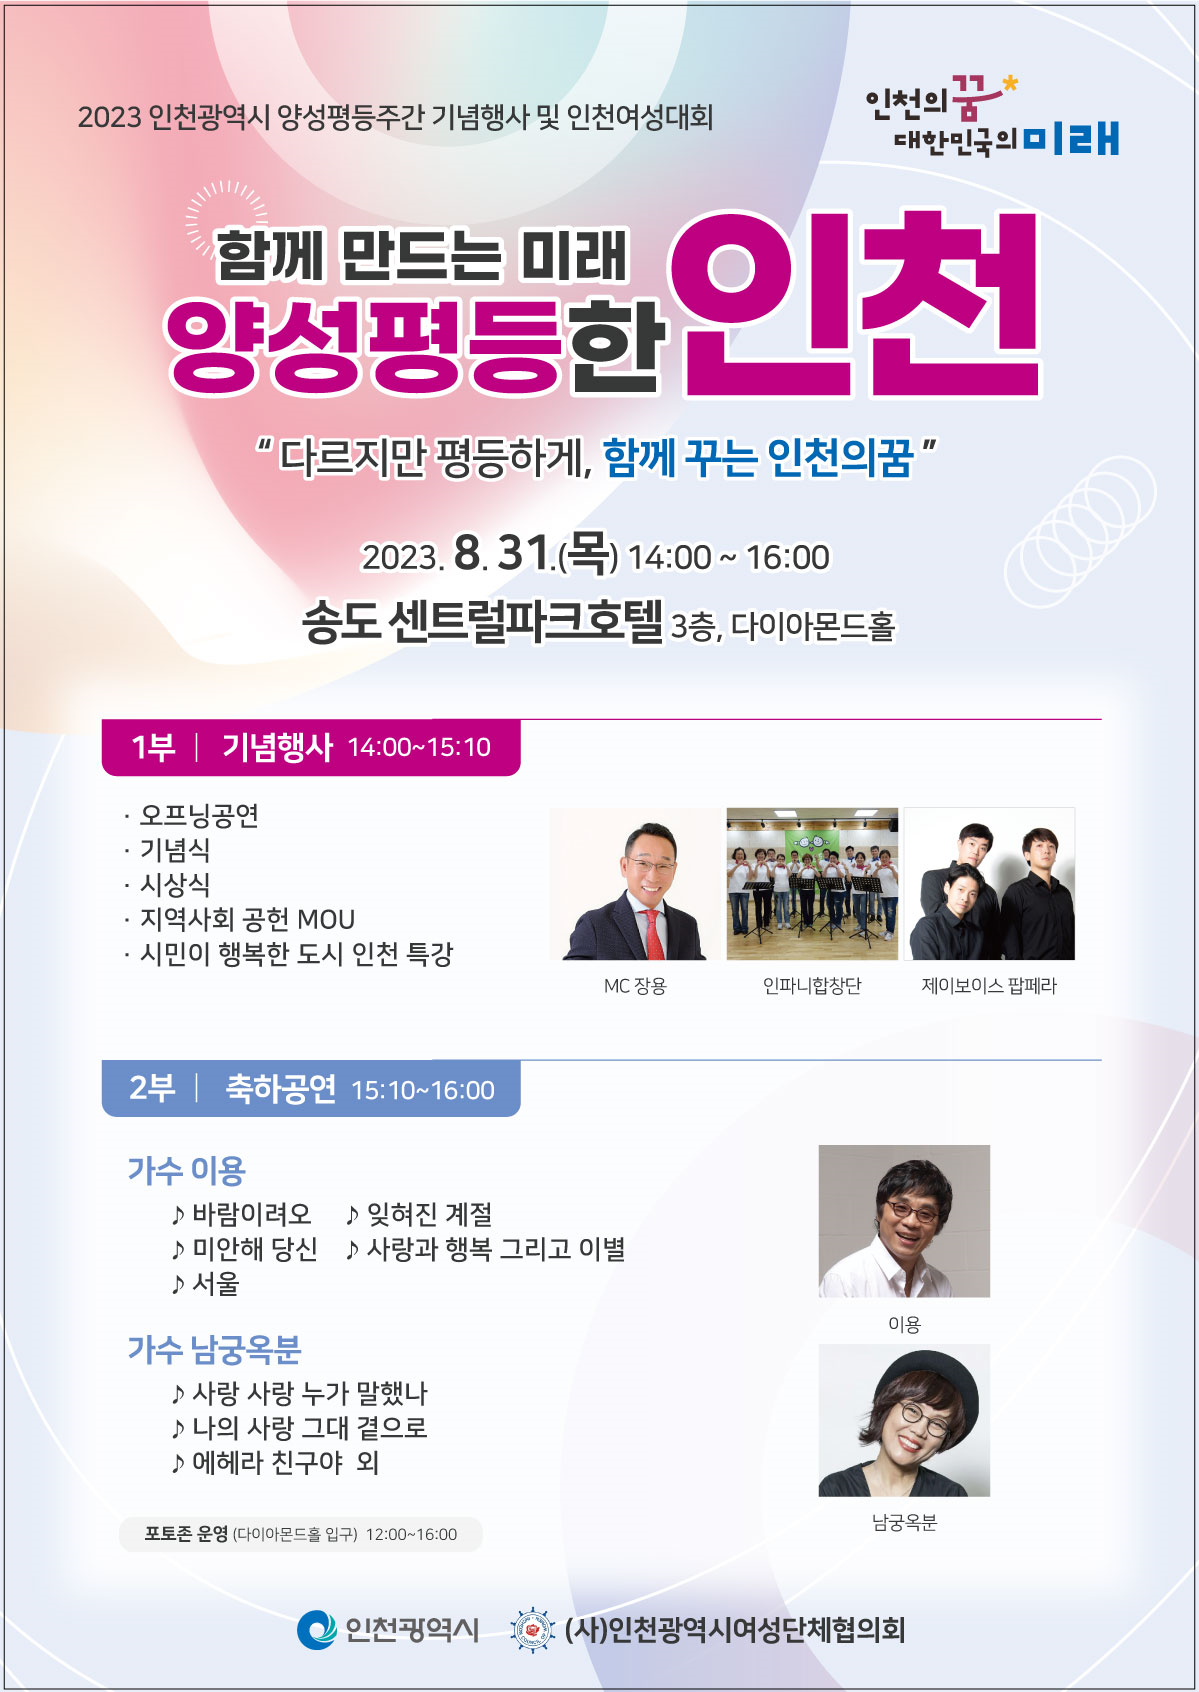 함께 만드는 미래 양성평등한 인천, 2023 양성평등주간 기념행사 개최 관련 이미지